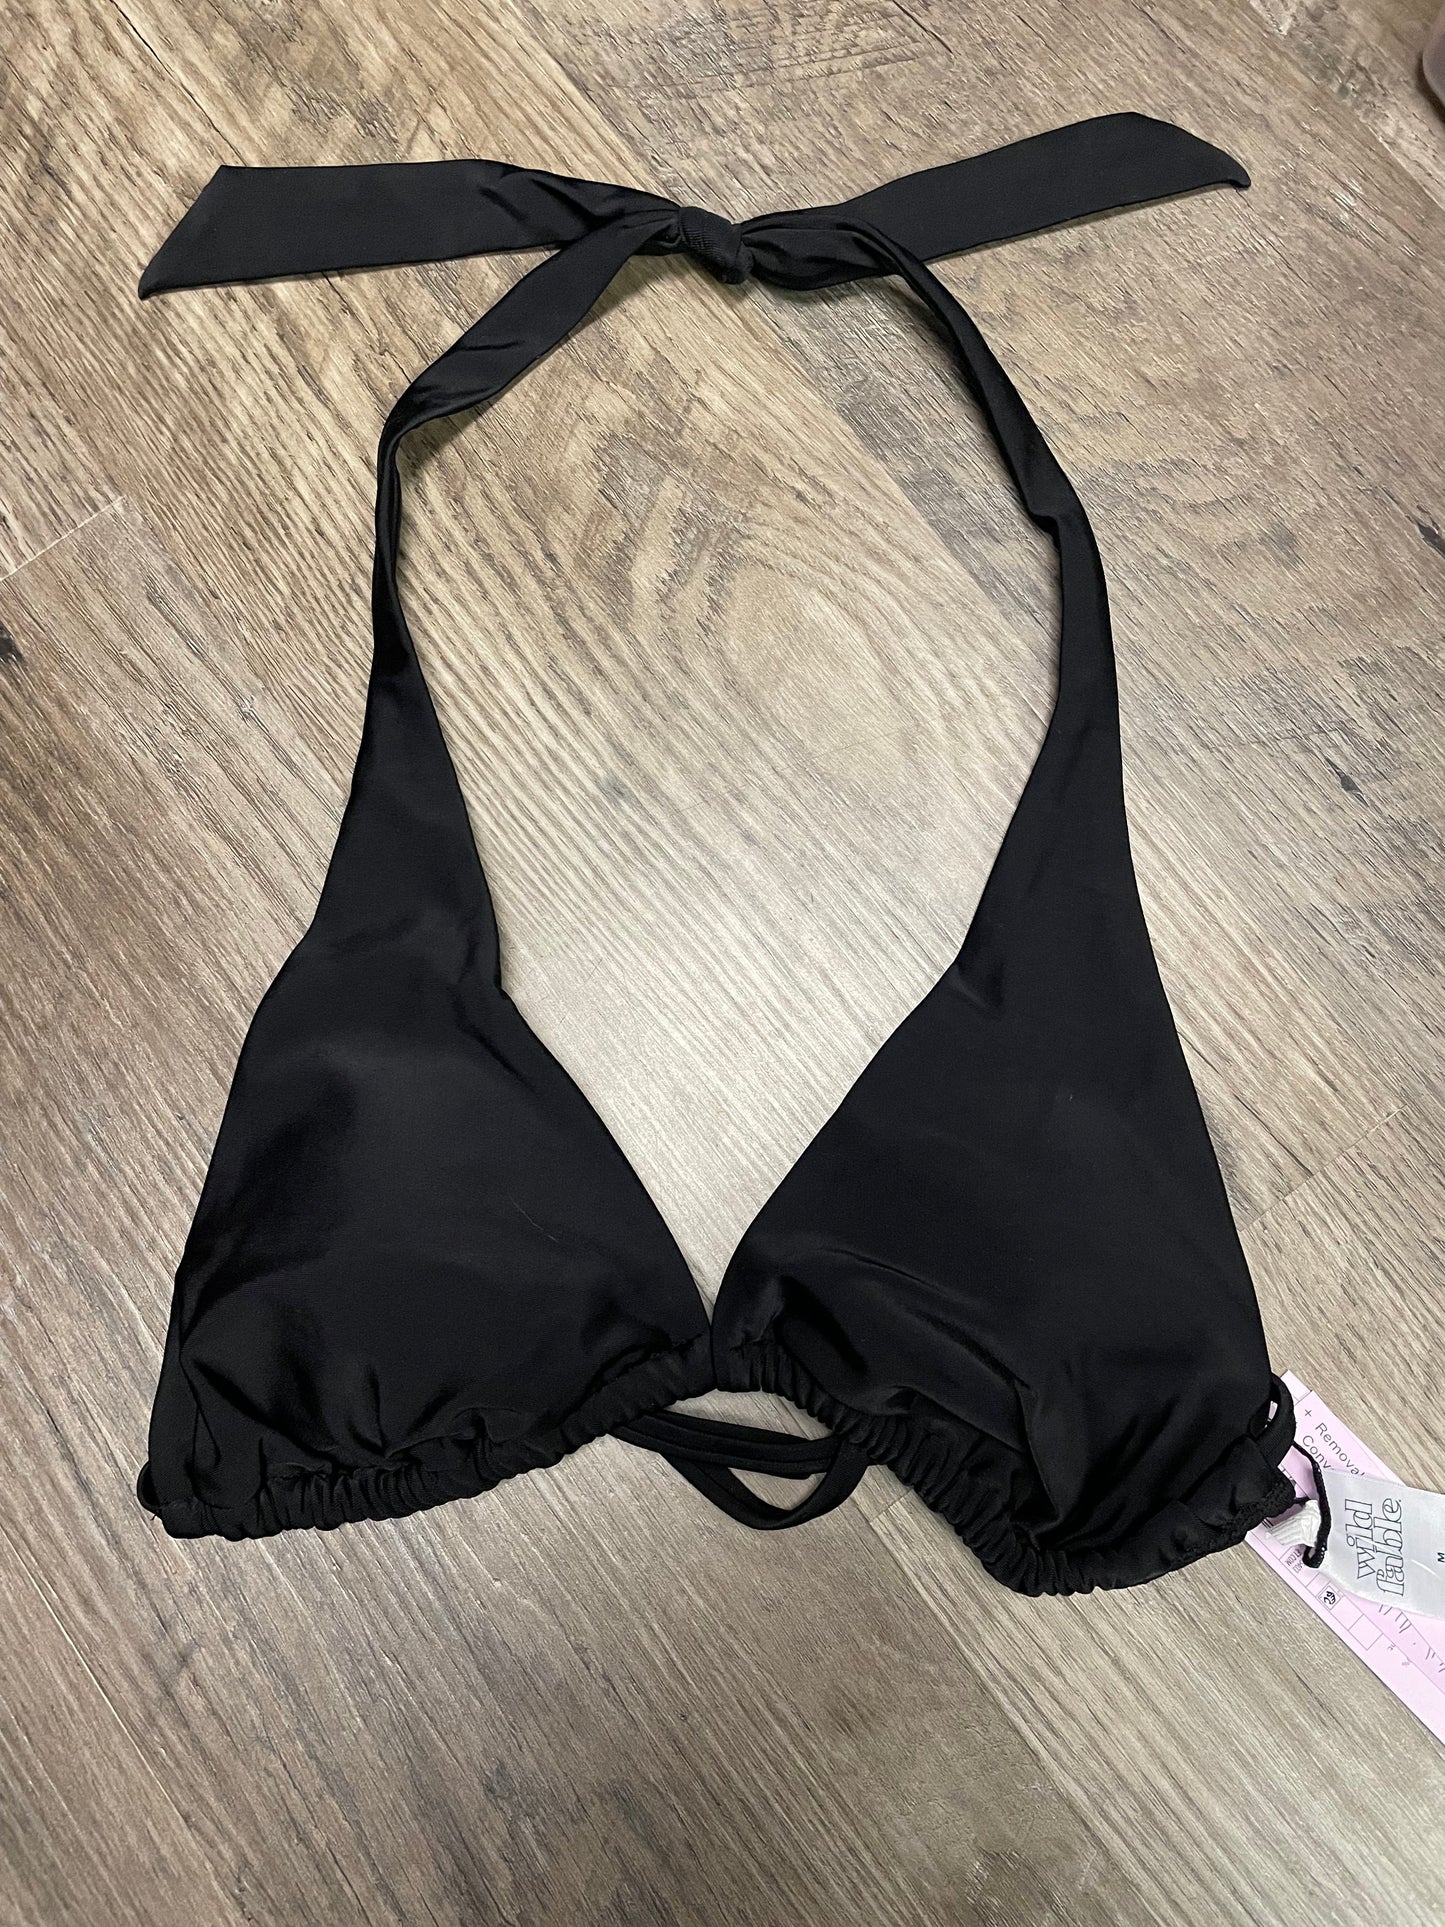 New Women XS 0-2 bikini top. Wild fable. Black